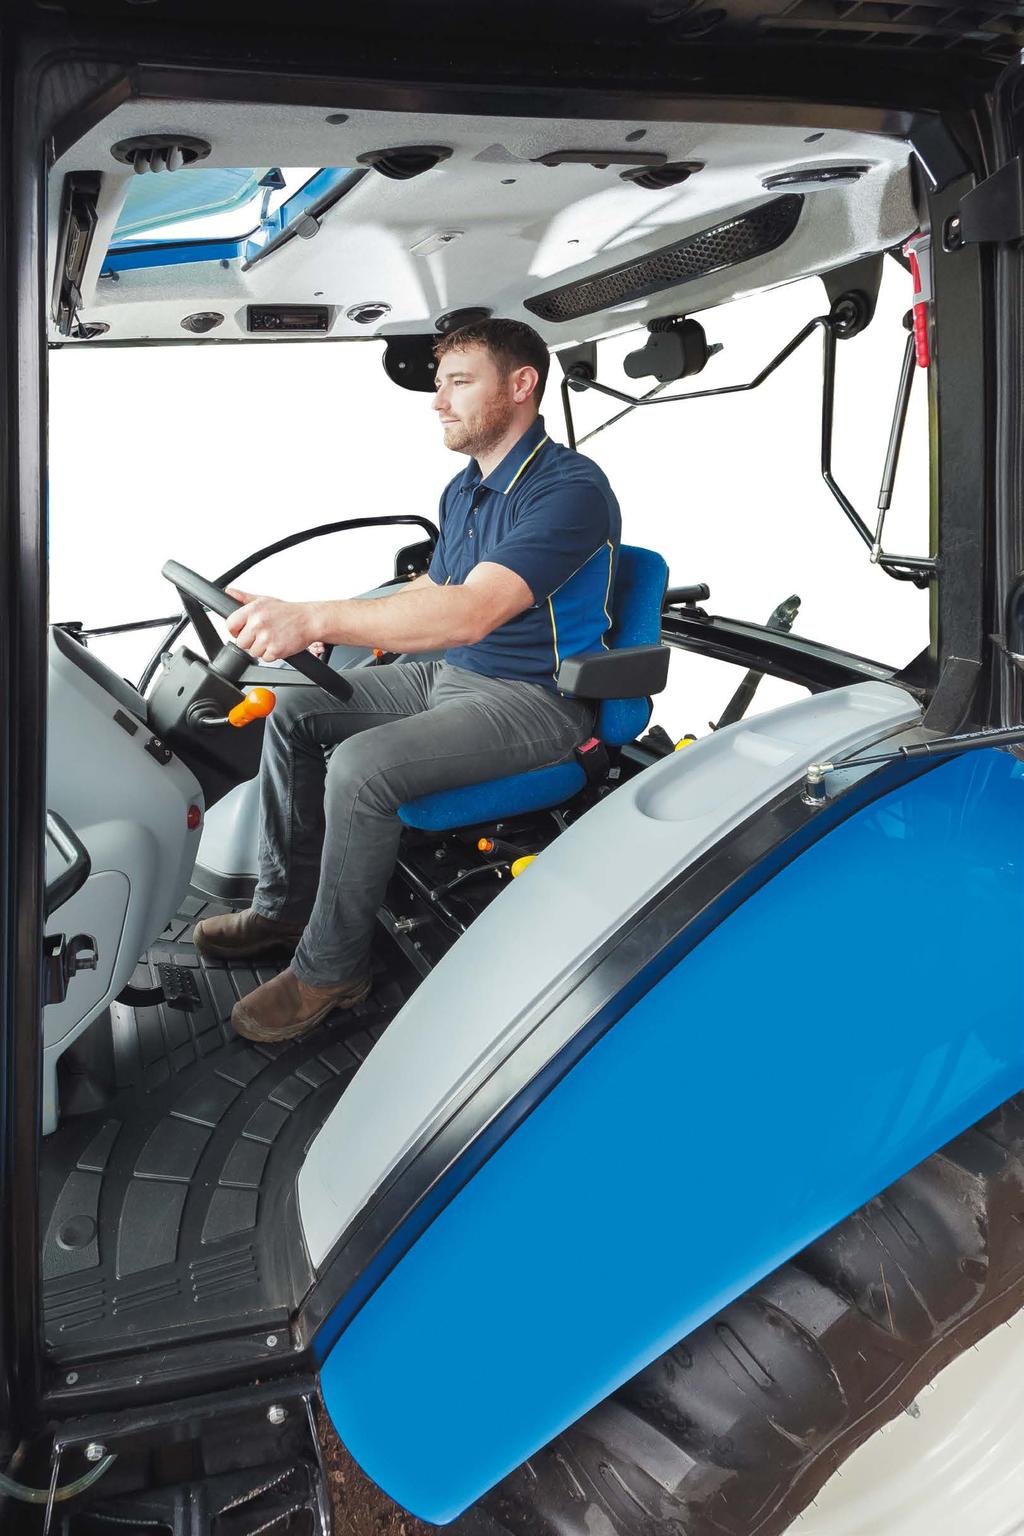 Od počátku byla tato nová generace traktorů stavěna pro potřeby obsluhy, prostřednictvím rozsáhlého výzkumu nejlepší pozice pro všechny klíčové ovládací prvky.